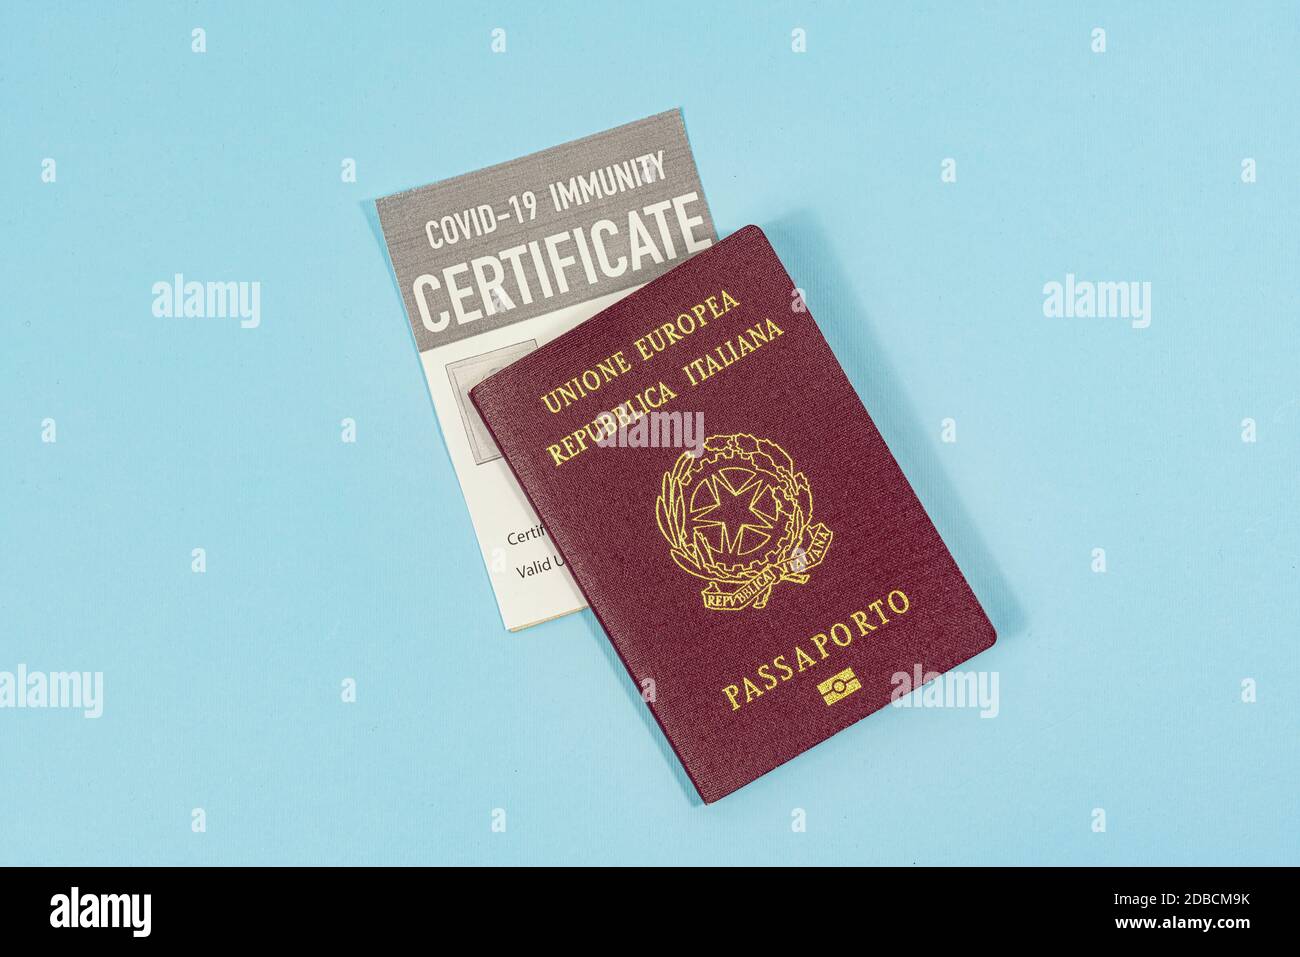 The immunity license and passport to travel in coronavirus times Stock Photo